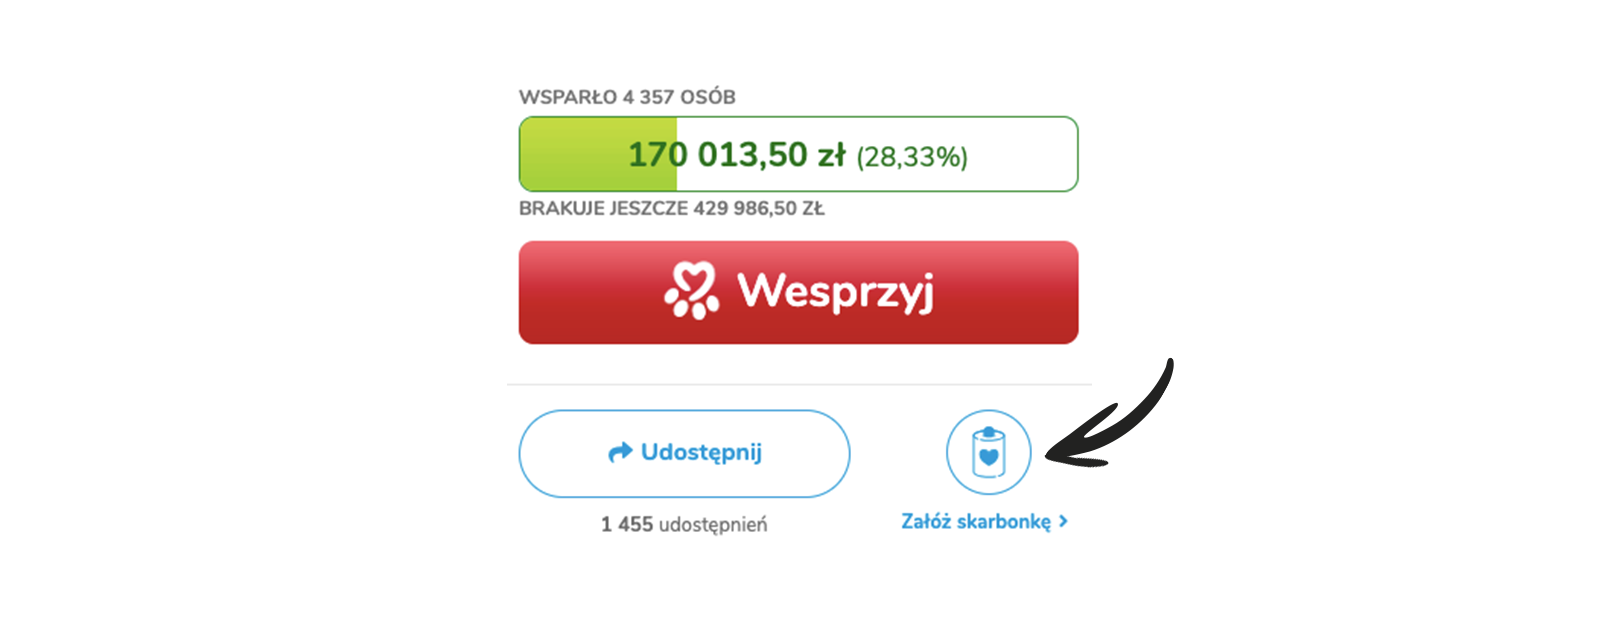 Jak pomagają Darczyńcy portalu Ratujemy Zwierzaki.pl?